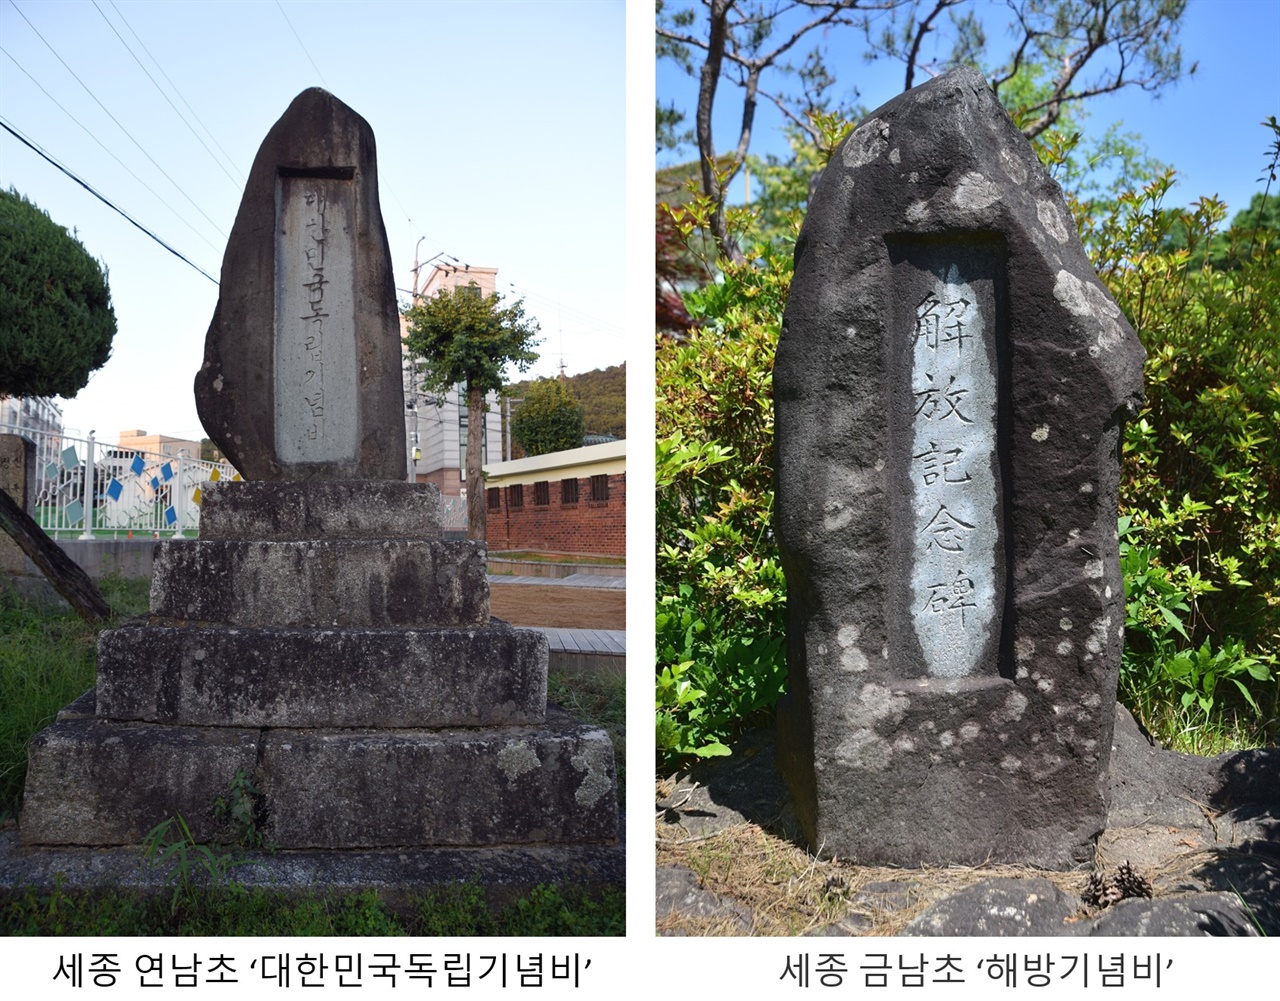 해방기념비 또는 대한민국독립기념비로 재활용된 황국신민서사비의 사례. 왼쪽이 세종 연남초 대한민국독립기념비이고, 오른쪽이 세종 금남초 해방기념비이다.